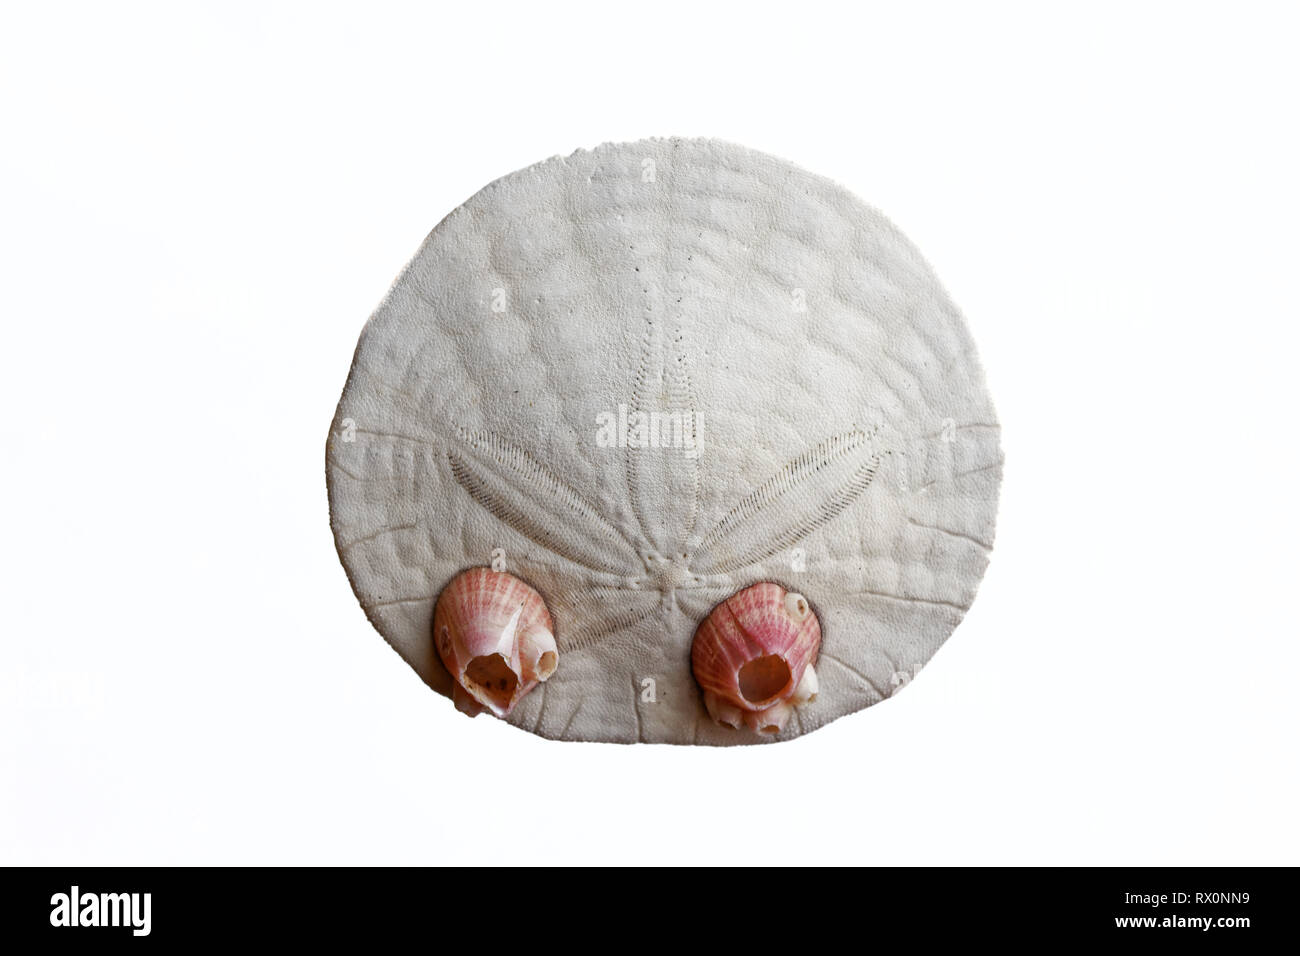 Foto: 43,503.04067 -- Closeup di un morto e puliti eccentrico Sand dollar (Dendraster ecentricus) e 2 Dall's acorn barnacles sfondo bianco Foto Stock